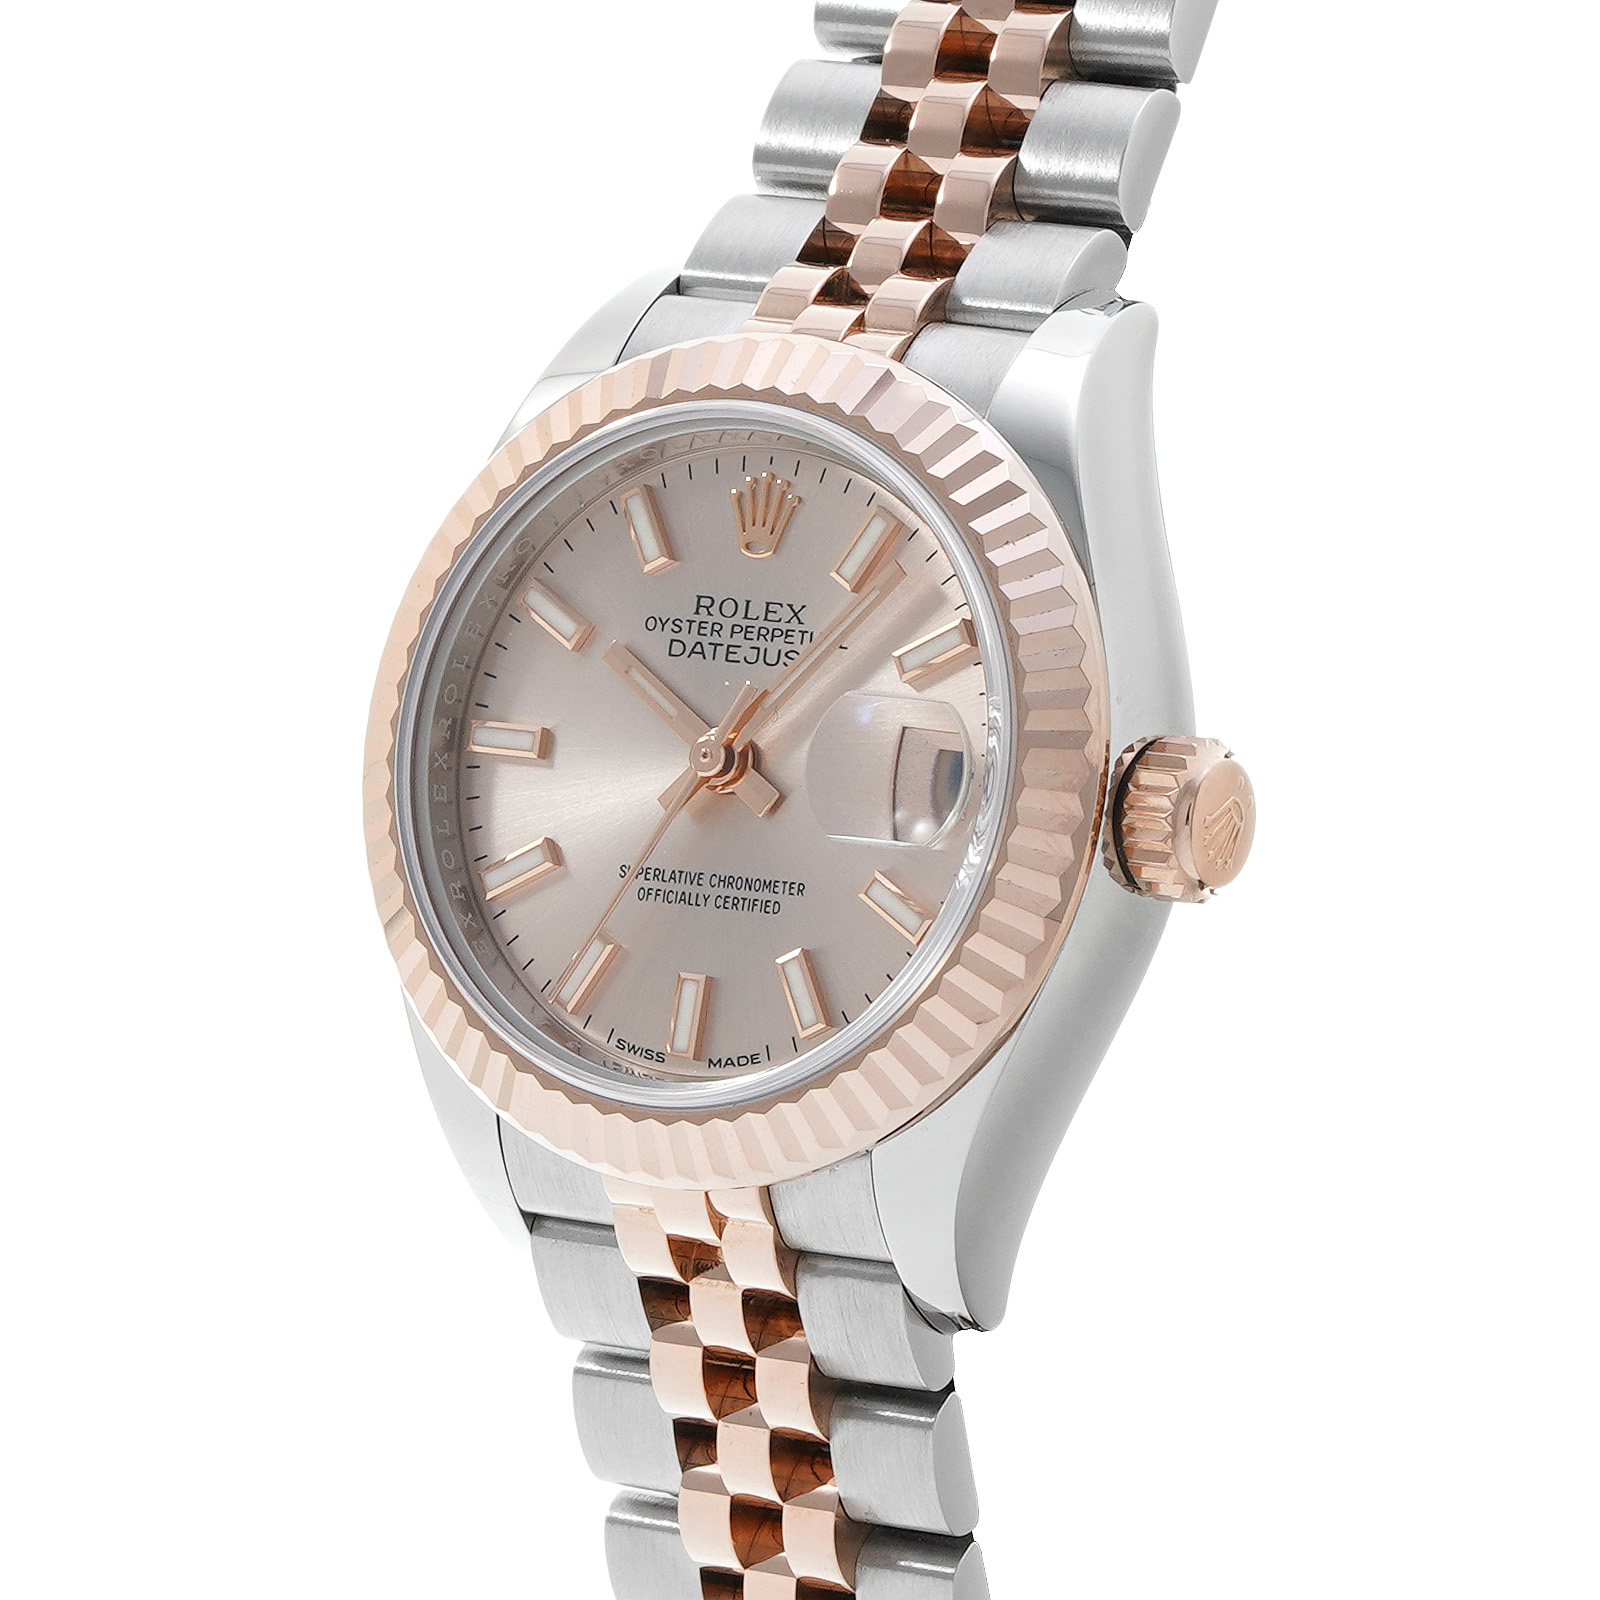 ロレックス ROLEX 279171 ランダムシリアル ホワイト レディース 腕時計